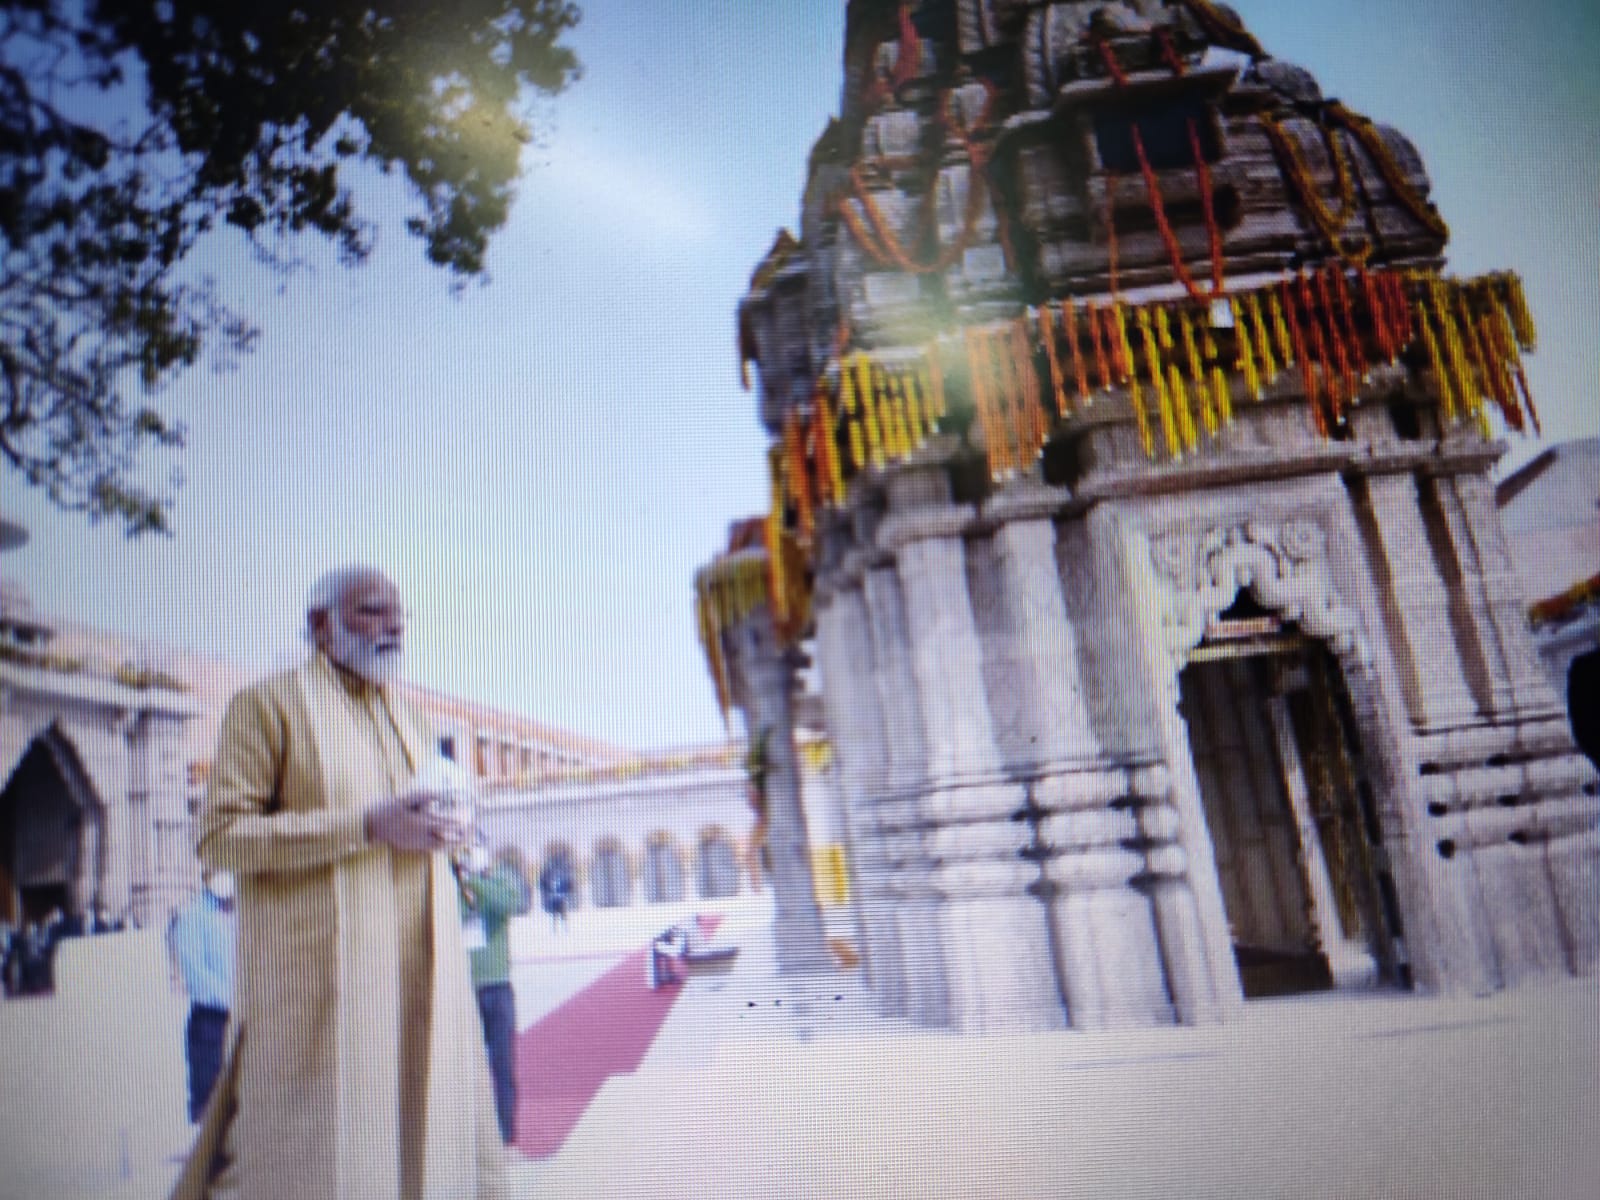 प्रधानमंत्री नरेंद्र मोदी ने वाराणसी में श्री काशी विश्वनाथ धाम का किया लोकार्पण